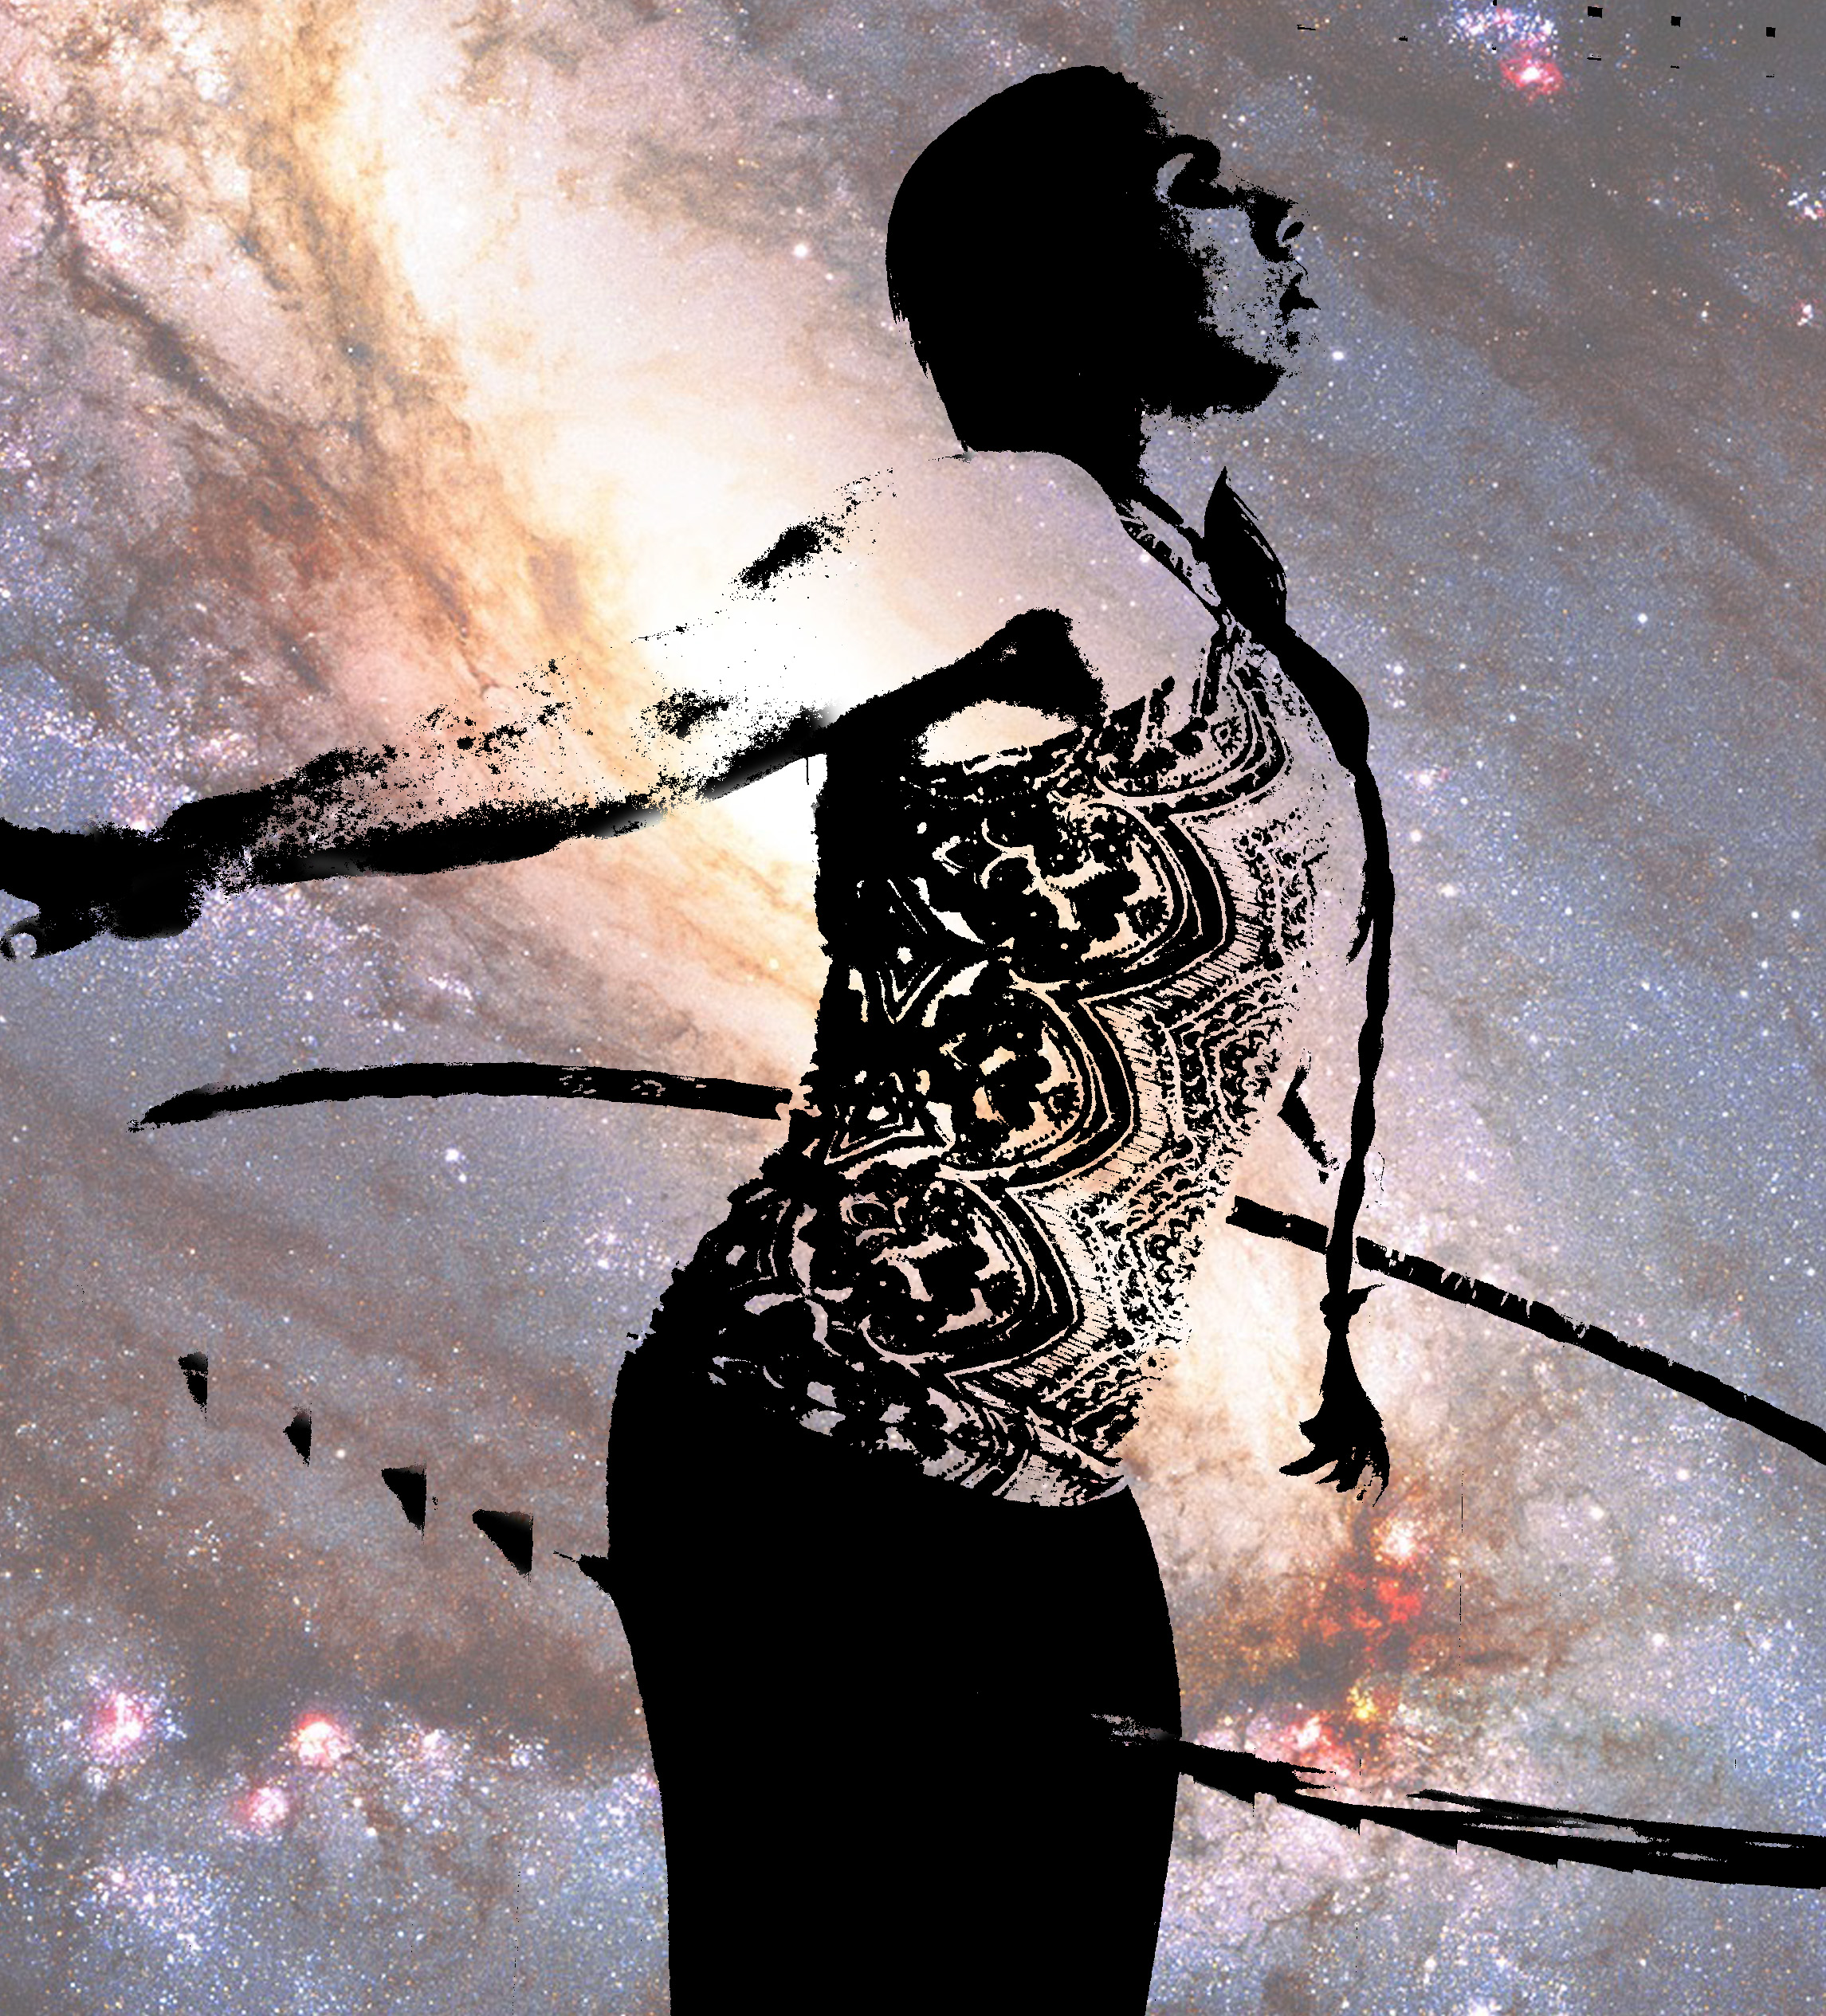 Woman silhouette hoop dancing in a galaxy. Hoop dance meditation.